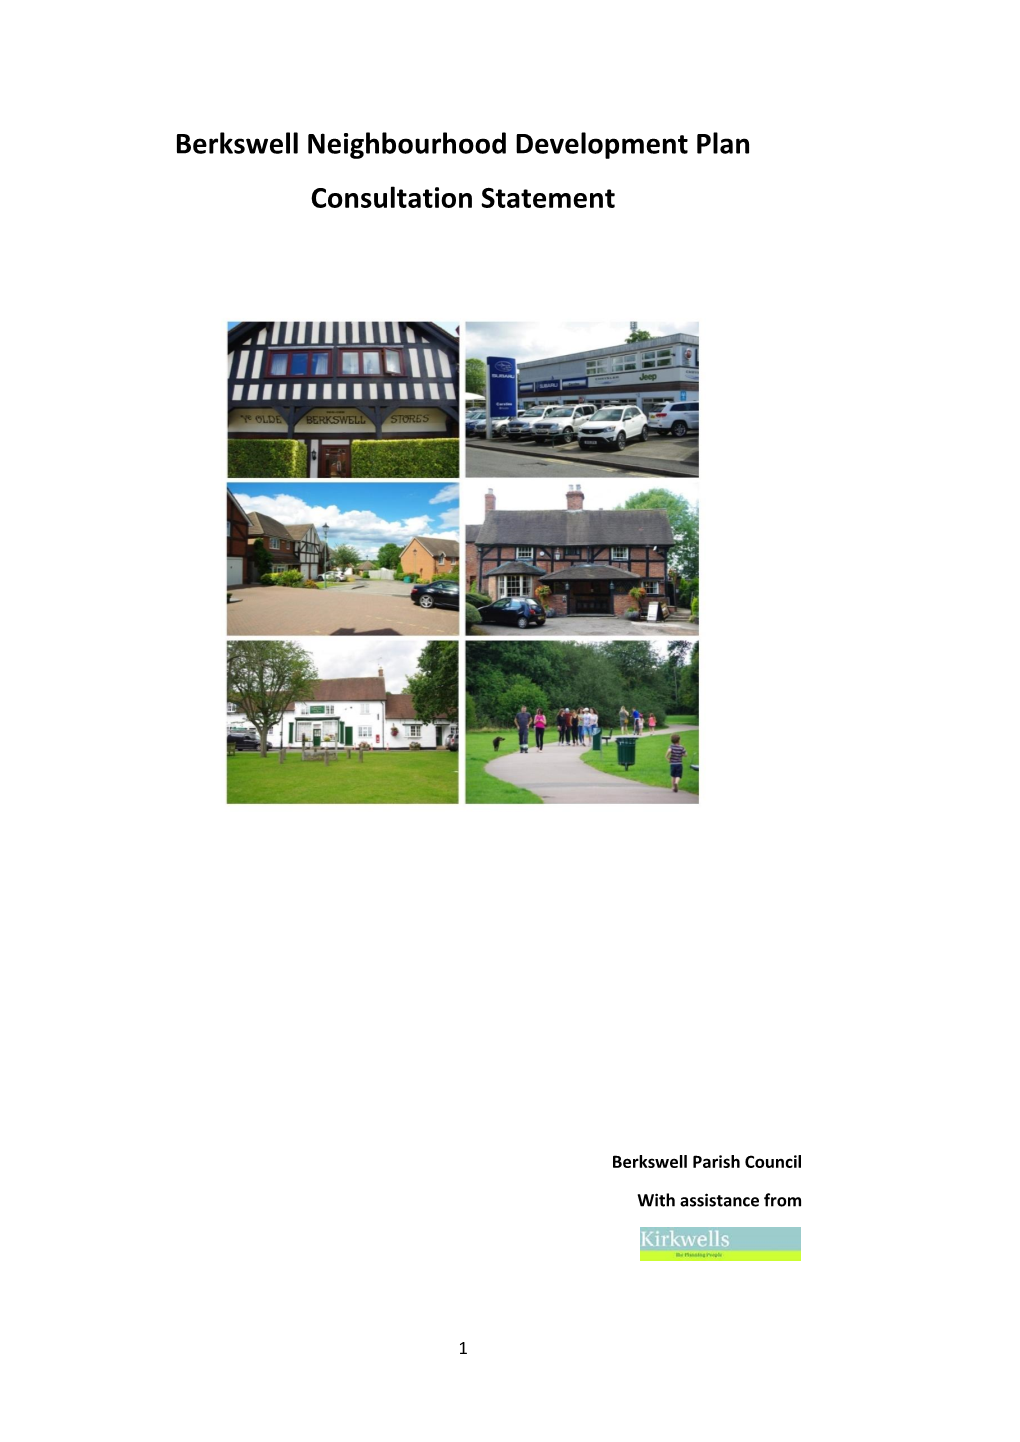 Berkswell Neighbourhood Development Plan Consultation Statement